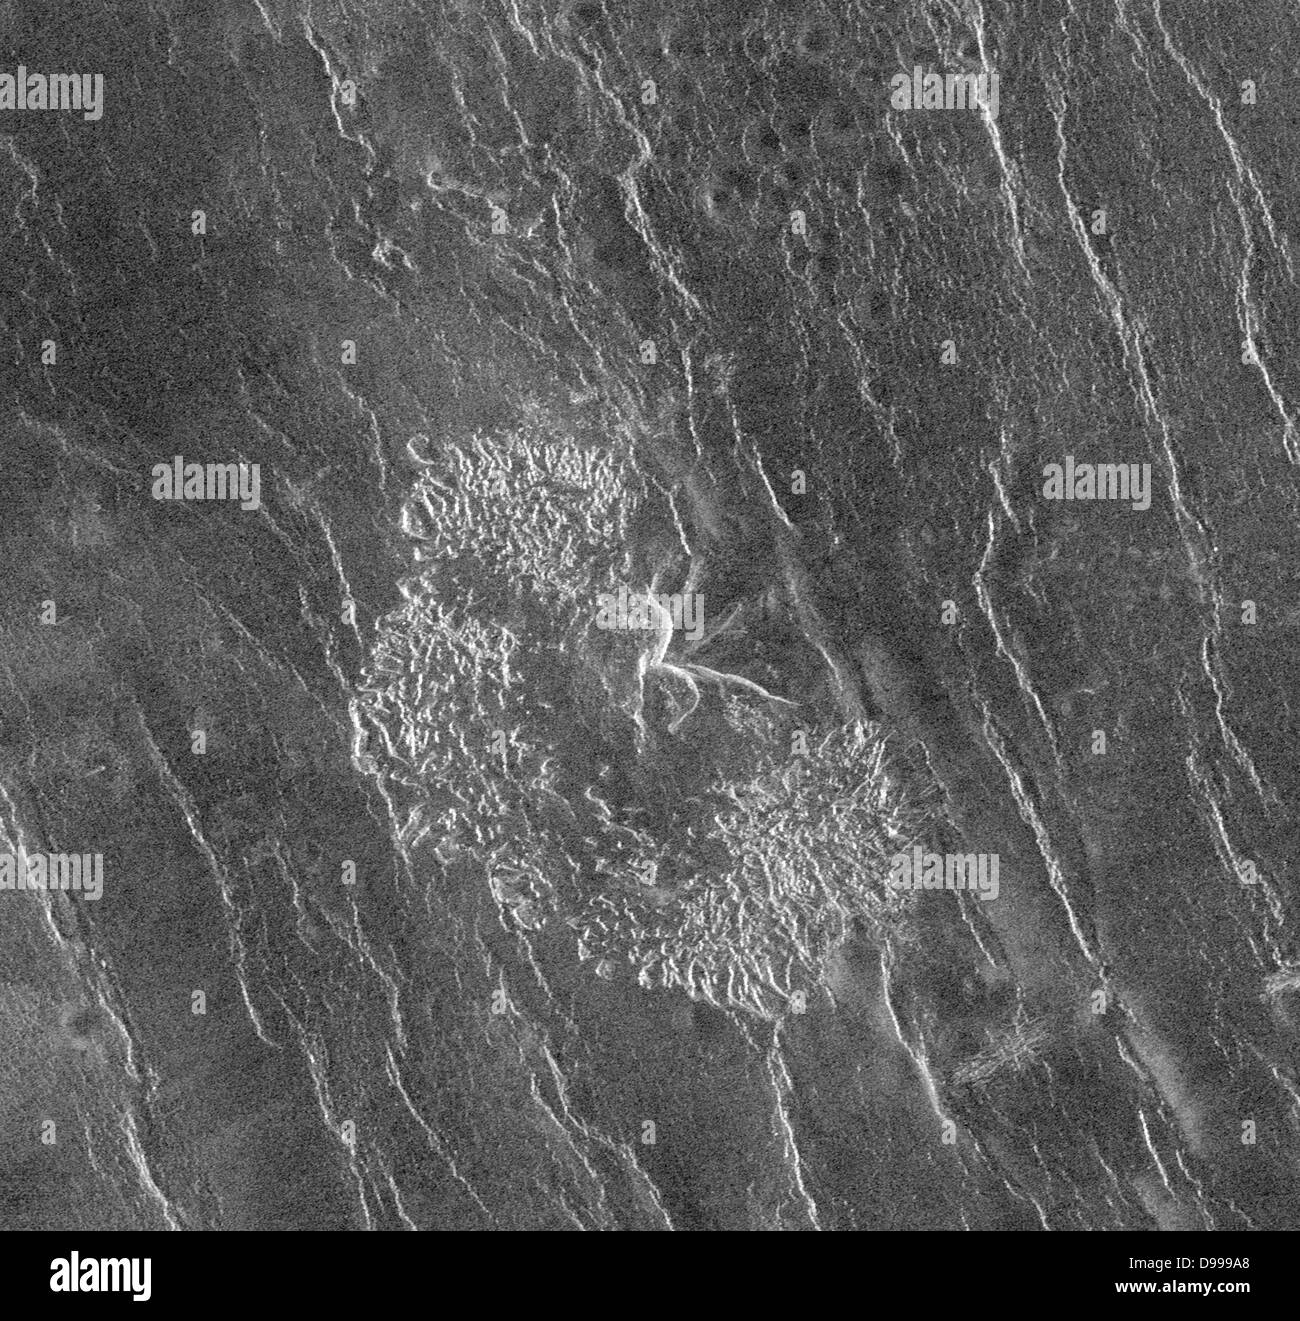 Il Magellan navicella spaziale ha osservato resto depositi di frana apparentemente derivanti dal crollo delle strutture vulcaniche. Foto Stock